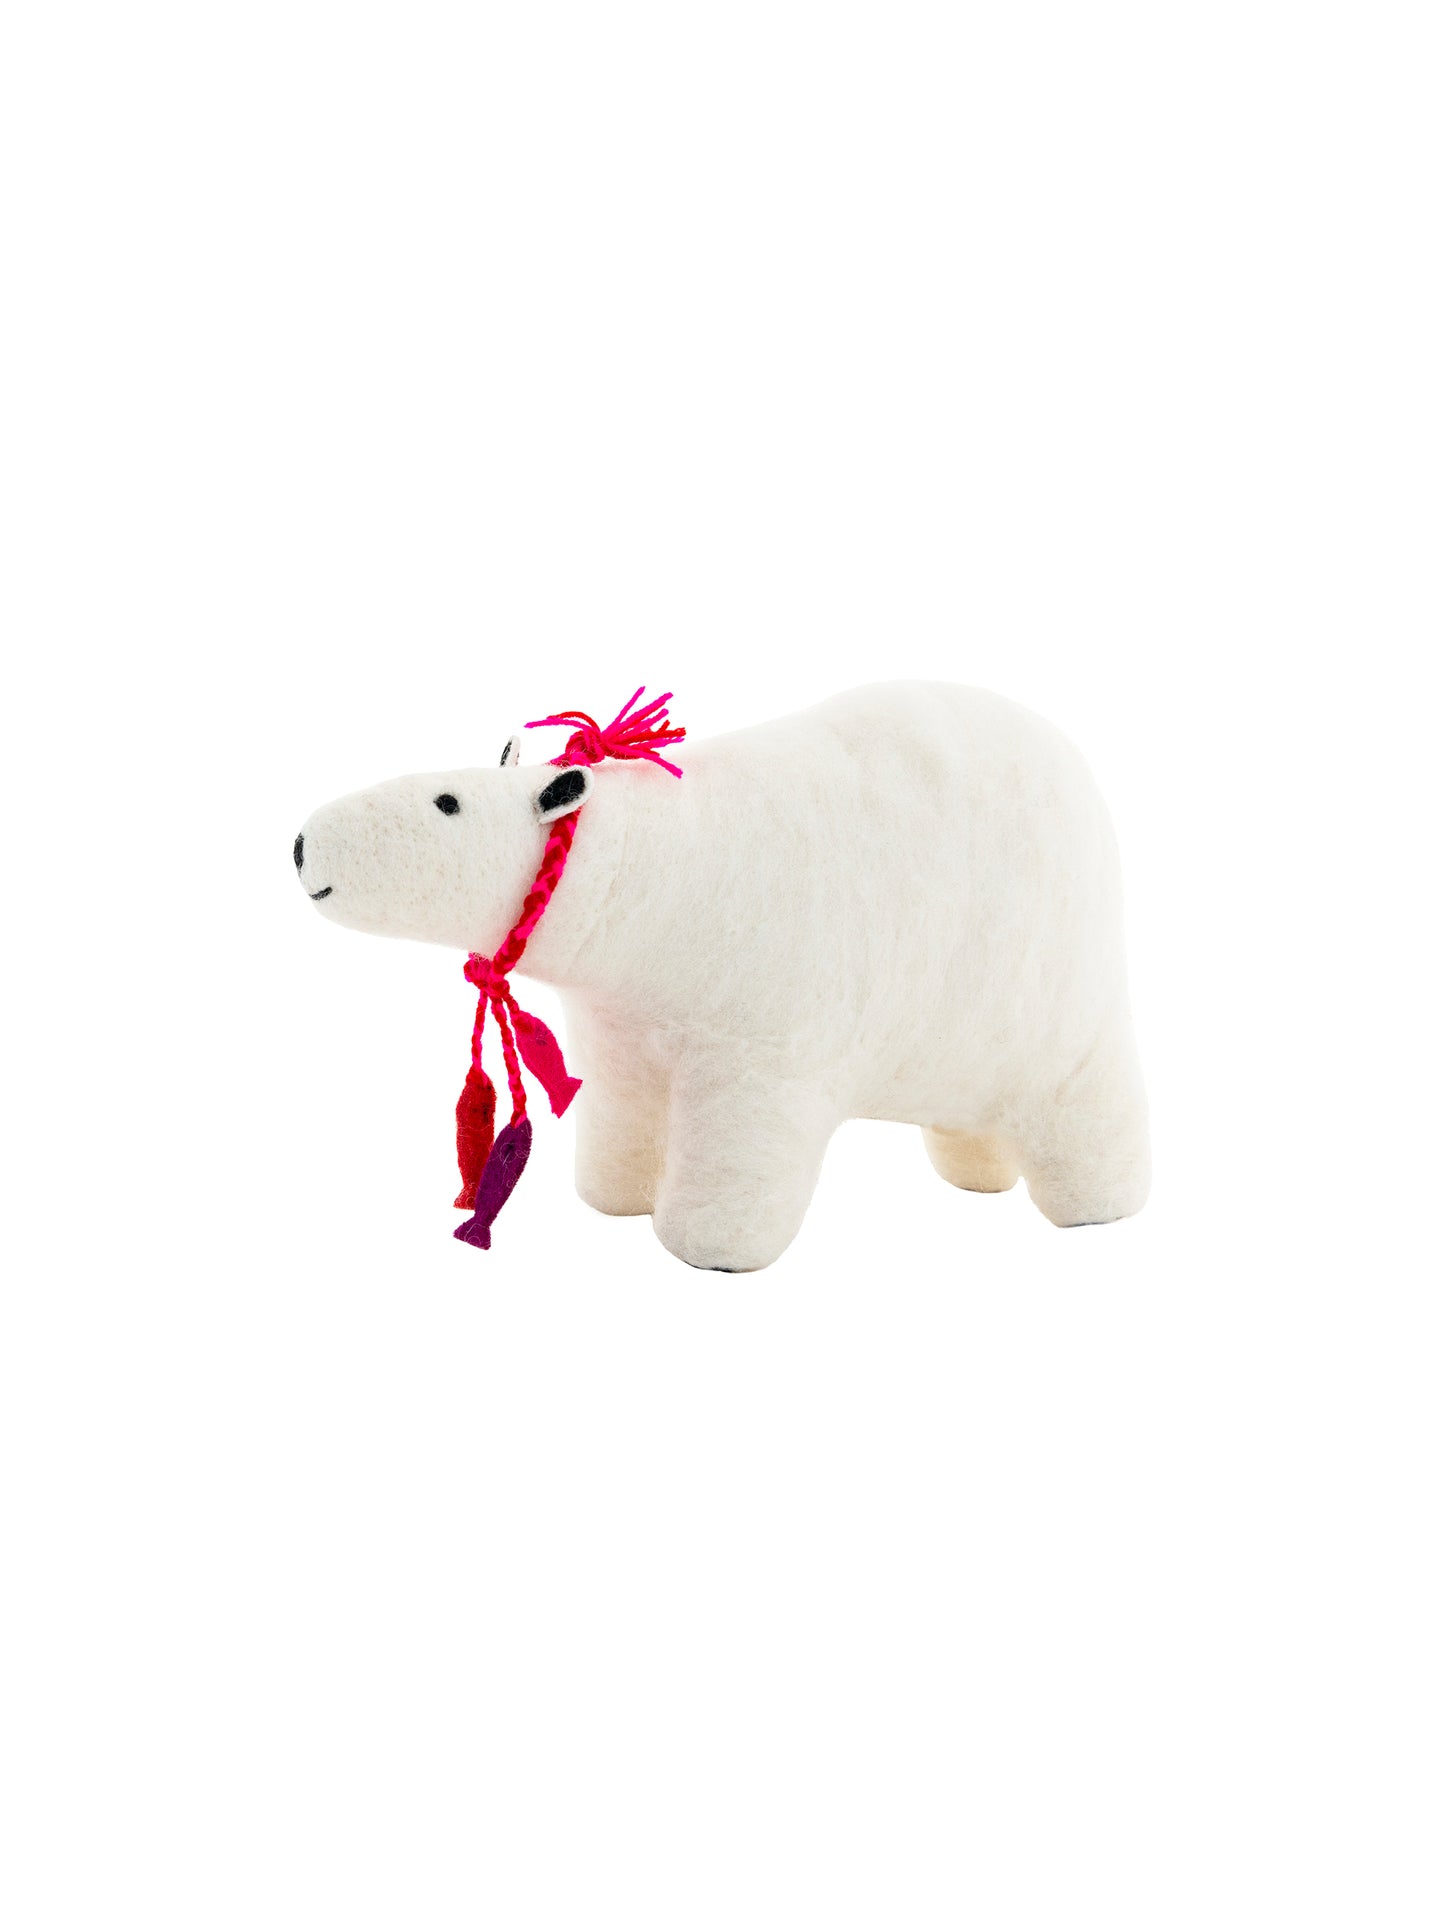 Sew Heart Felt Polar Bear Toy Pink Weston Table